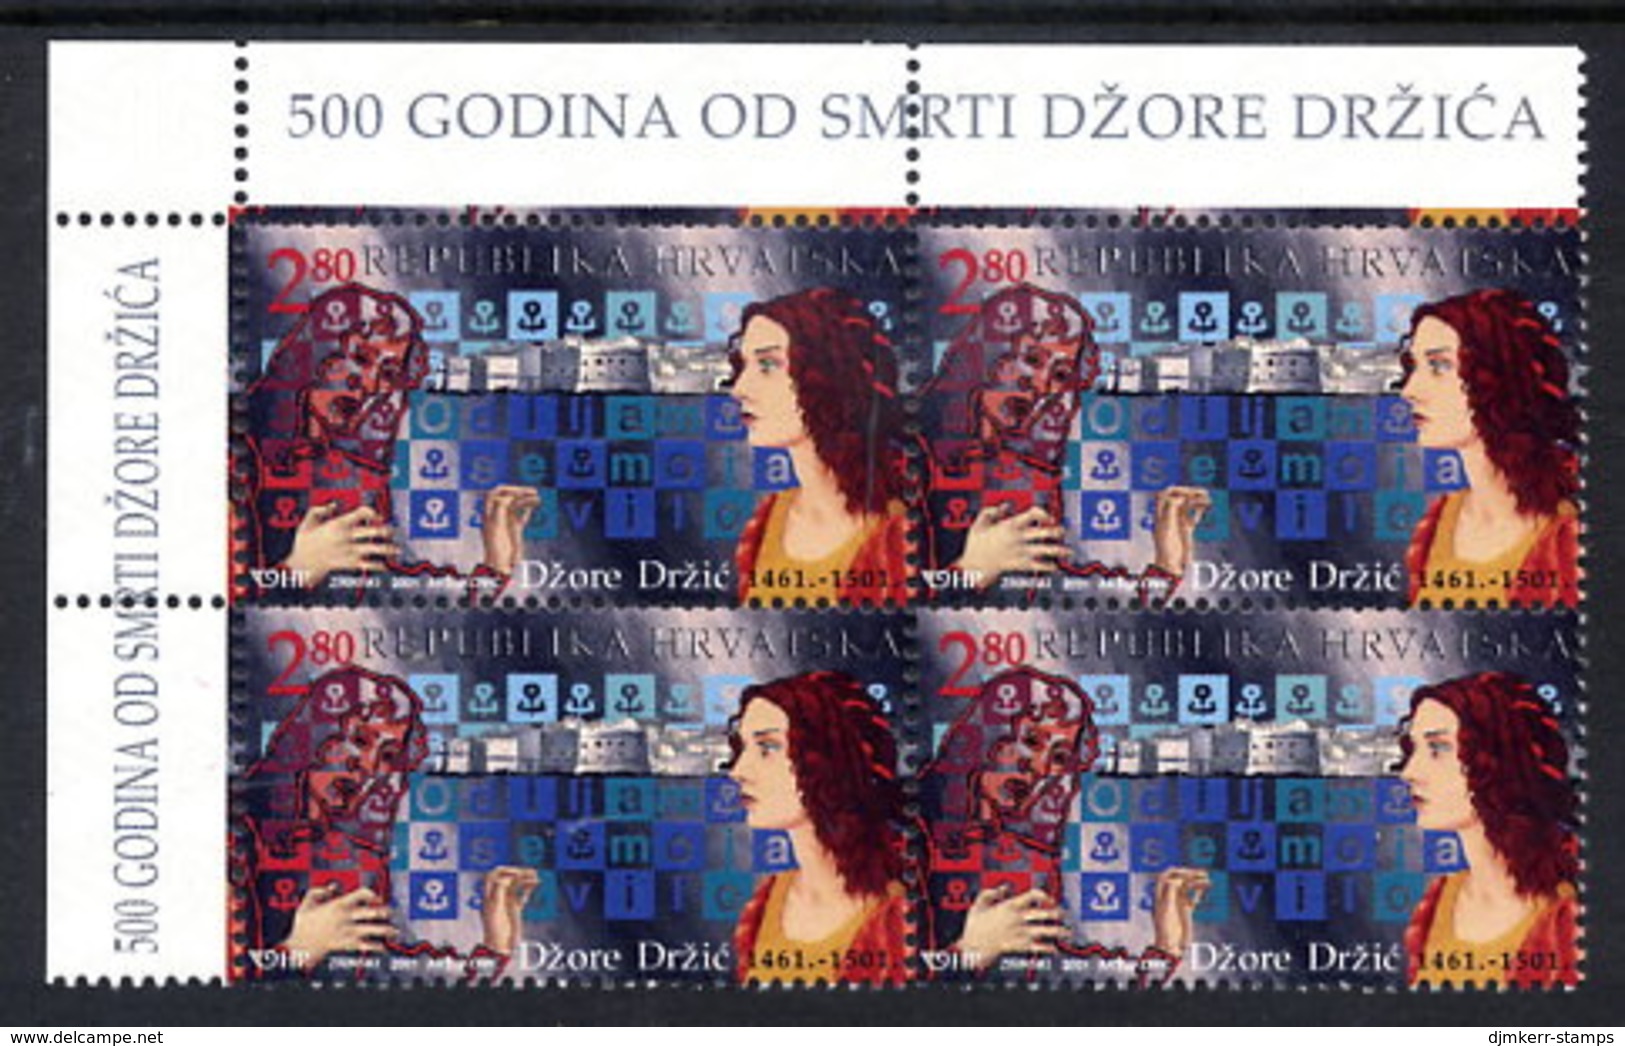 CROATIA 2001 Dzore Drzic Quincentenary Block Of 4 MNH / **.  Michel 565 - Croatia